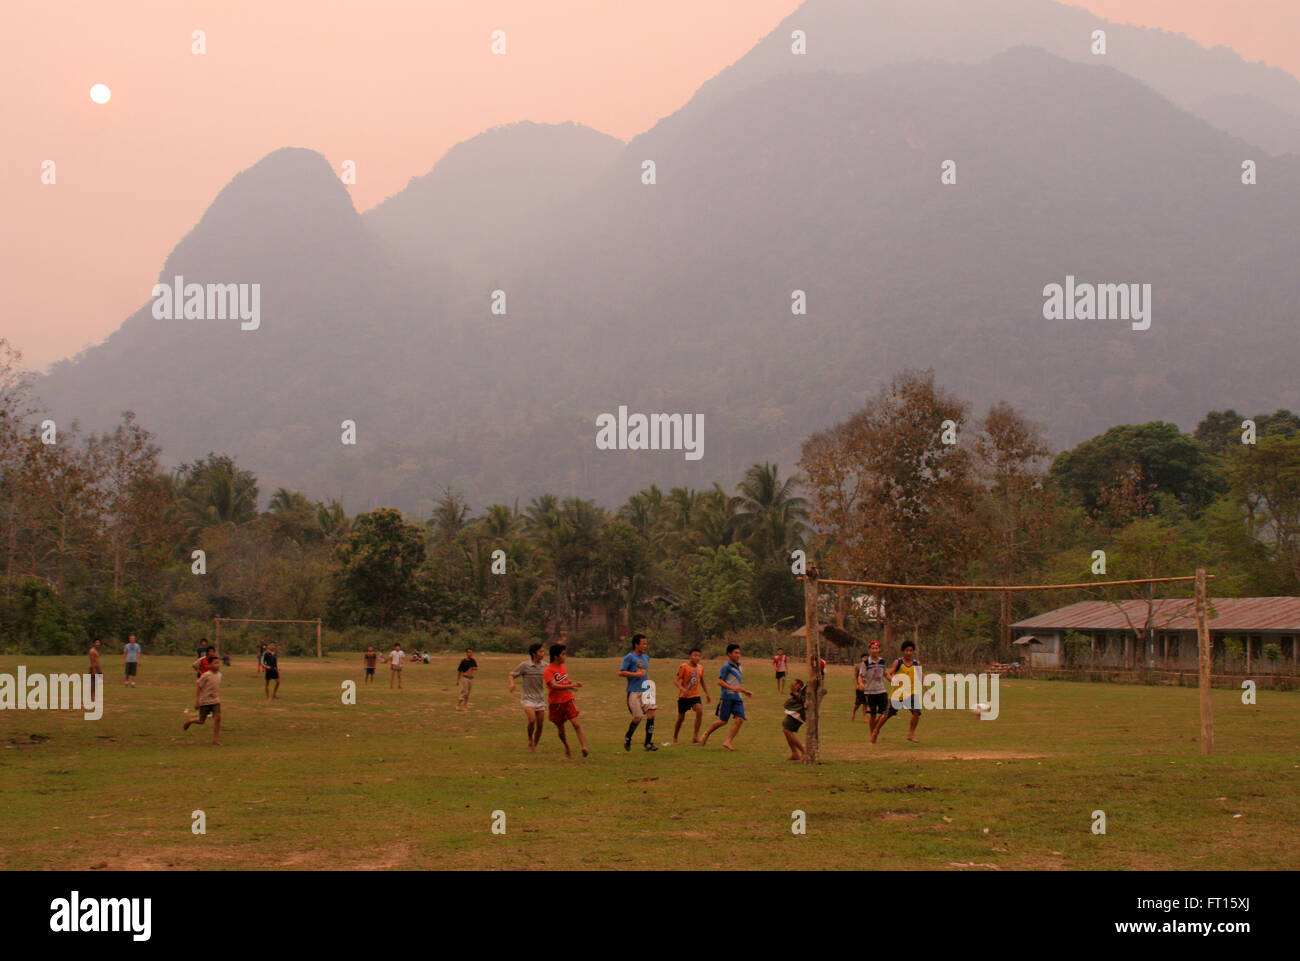 Muchachos jugando al fútbol, con montañas al fondo Foto de stock